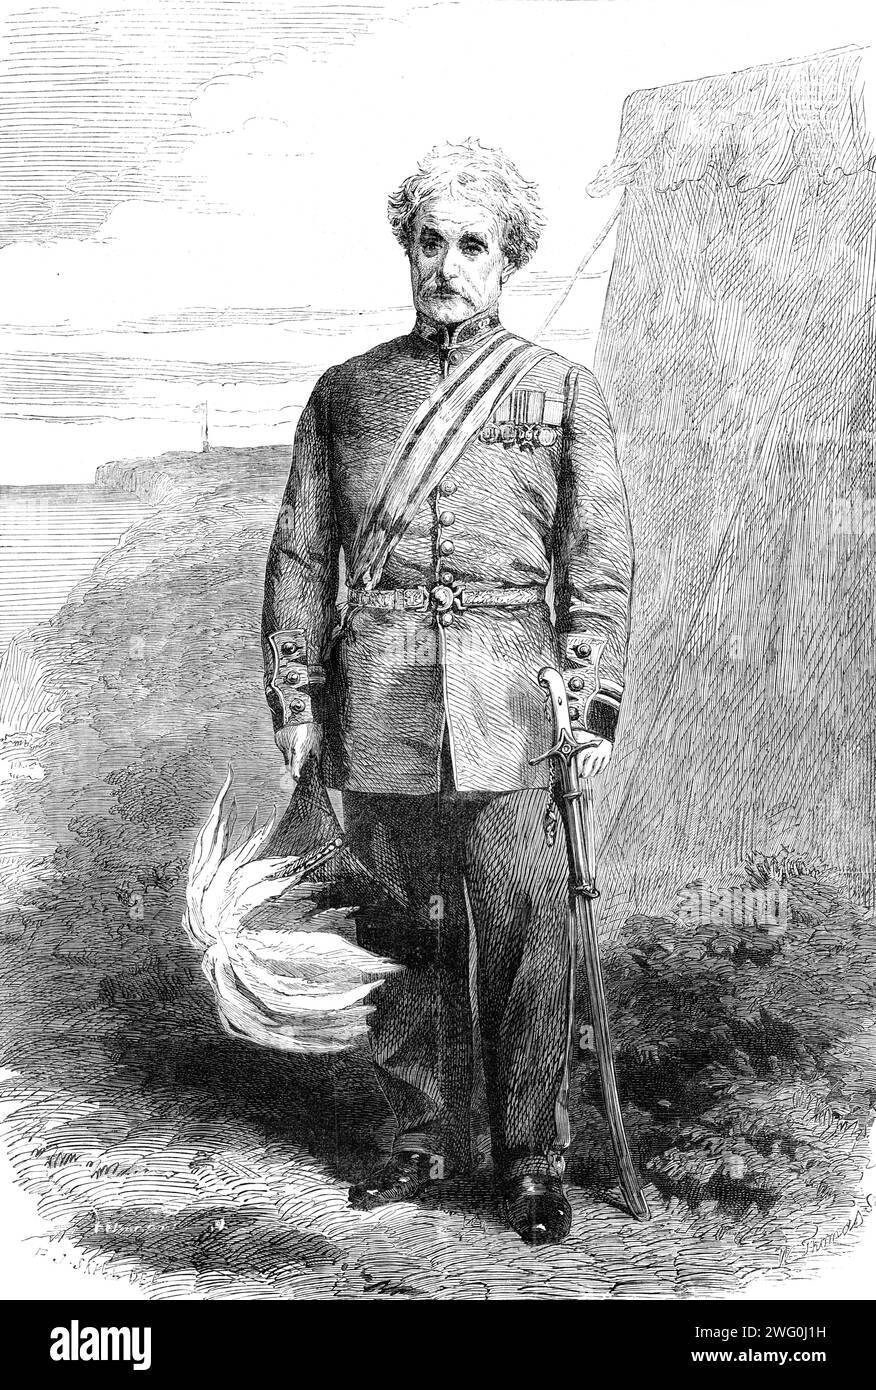 Generale Lord Clyde, G.C.B., K.S.I., 1862. Lord Clyde... ha assistito a un servizio attivo con i 60th Rifles nella guerra americana nel 1814, la sua presenza in quella contesa probabilmente impediva la sua presenza a Waterloo... mentre prestava servizio [nelle Indie occidentali] prese parte alla repressione di un'insurrezione schiavista a Demerara....durante le campagne del Punjaub del 1848-9 comandò la terza divisione dell'esercito sotto Lord Gough... mentre il generale di brigata comandava i distretti di Peshawur, era continuamente impegnato in operazioni contro le tribù delle colline... prese il comando della Brigata Highland della prima divisione Foto Stock